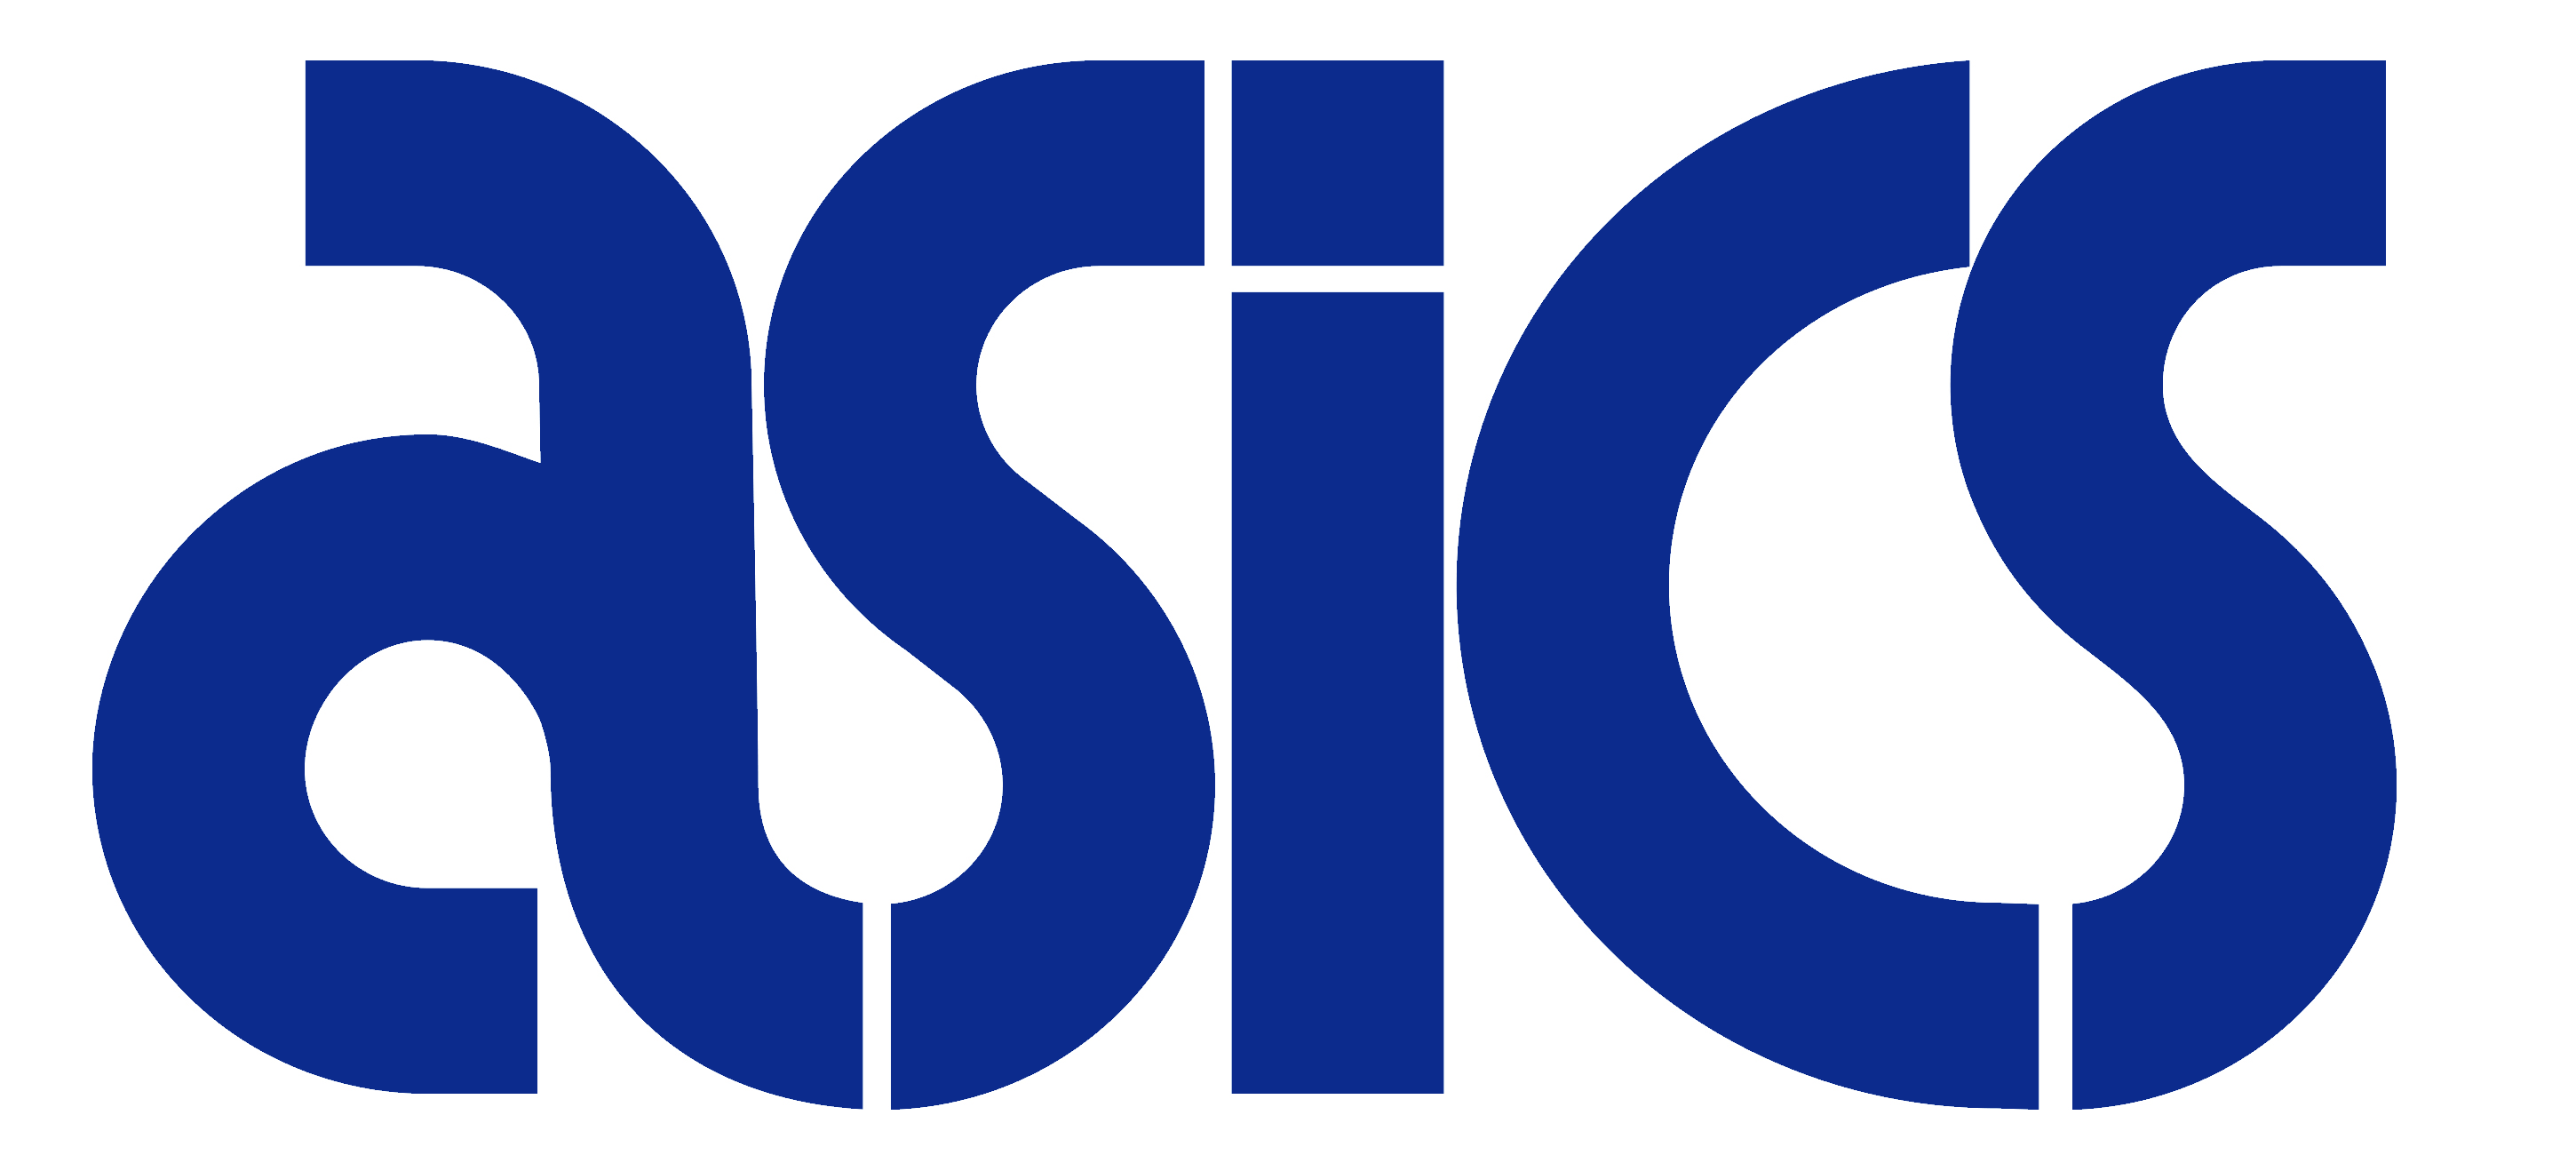 Asics Logo - Asics – Logos Download